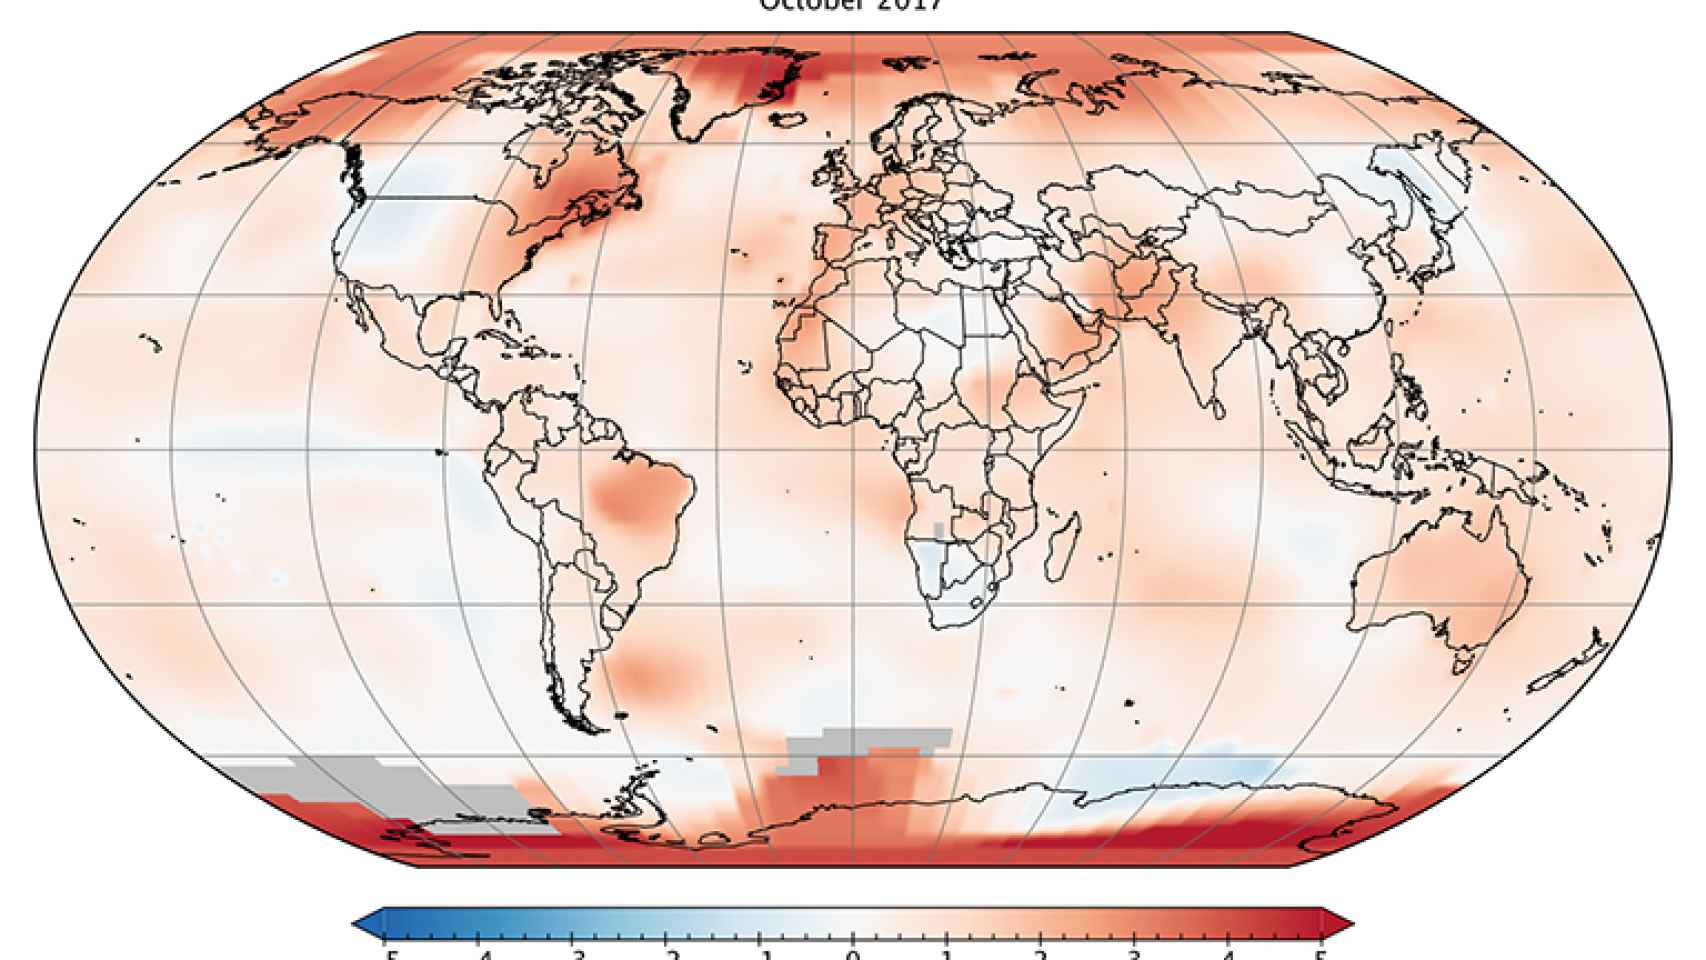 Mapa de anomalías en temperaturas globales de octubre de 2017 en referencia al periodo desde 1980 a 2015.